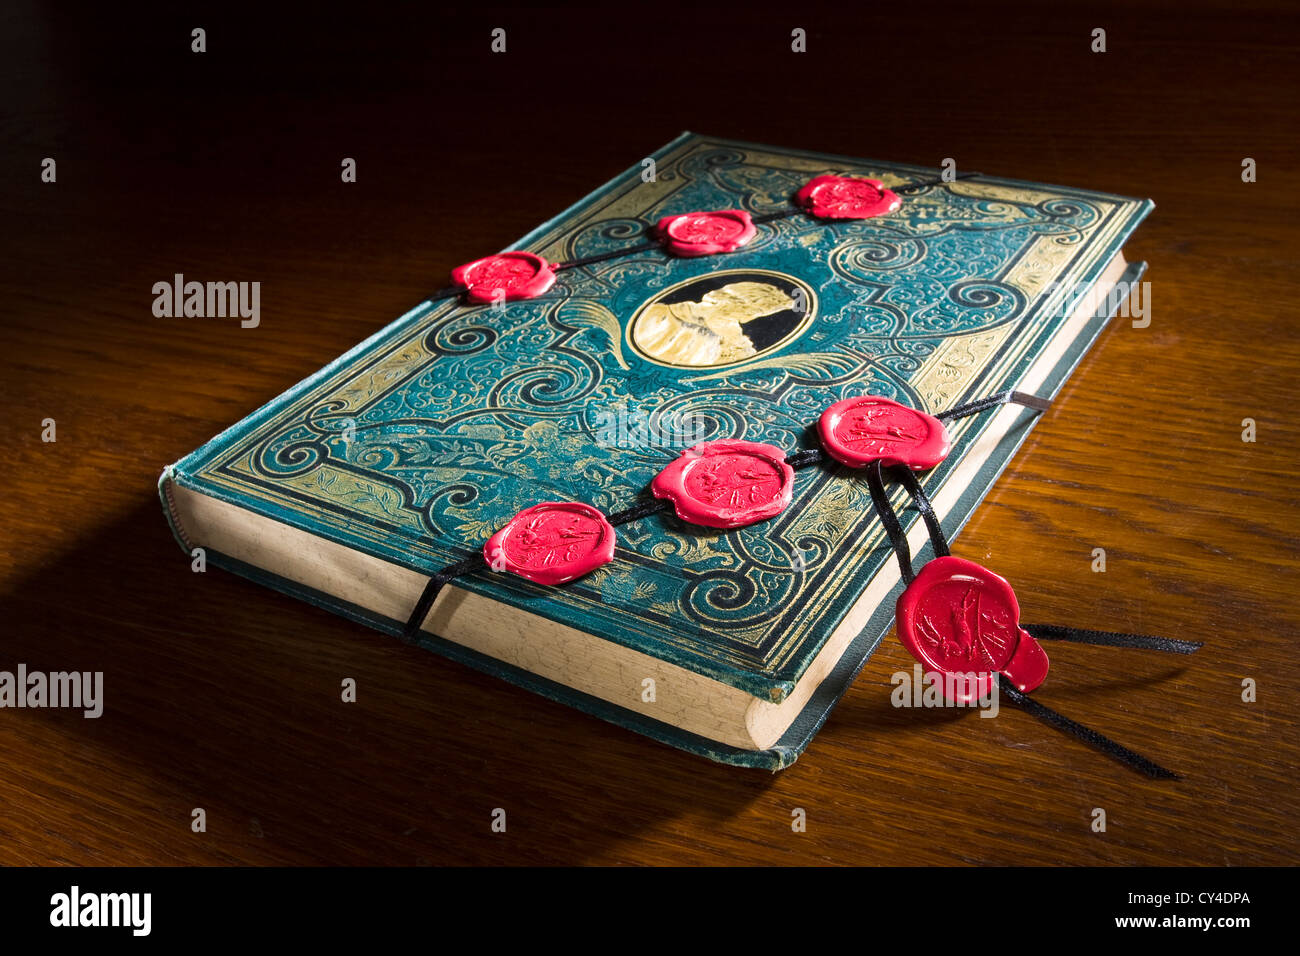 Vecchio libro con sette sigilli è sdraiato sul tavolo, essa è ricca di conoscenze ma il contenuto è segreto e non può essere aperto ed è incomprensibile Foto Stock